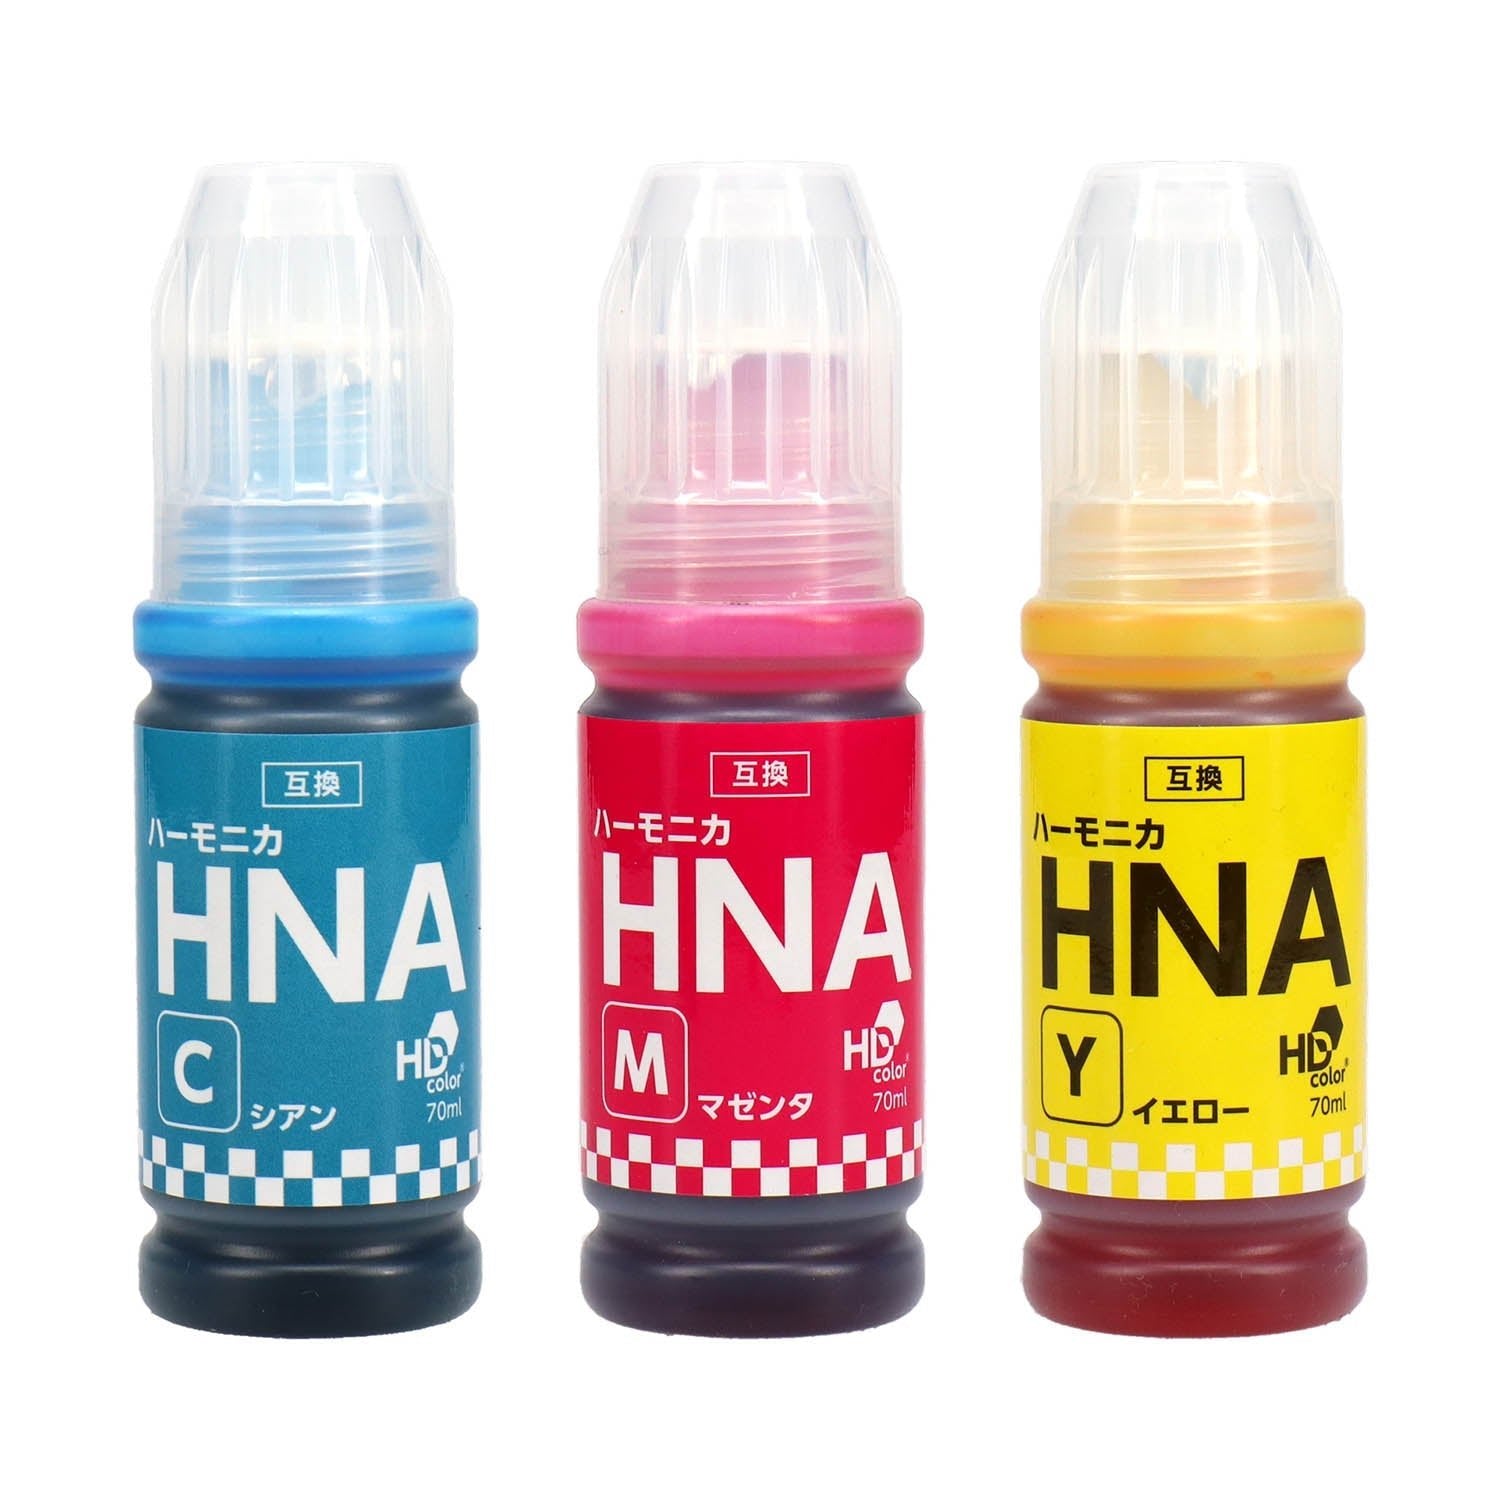 エプソン用 HNA (ハーモニカ) 互換インクボトル カラー3色